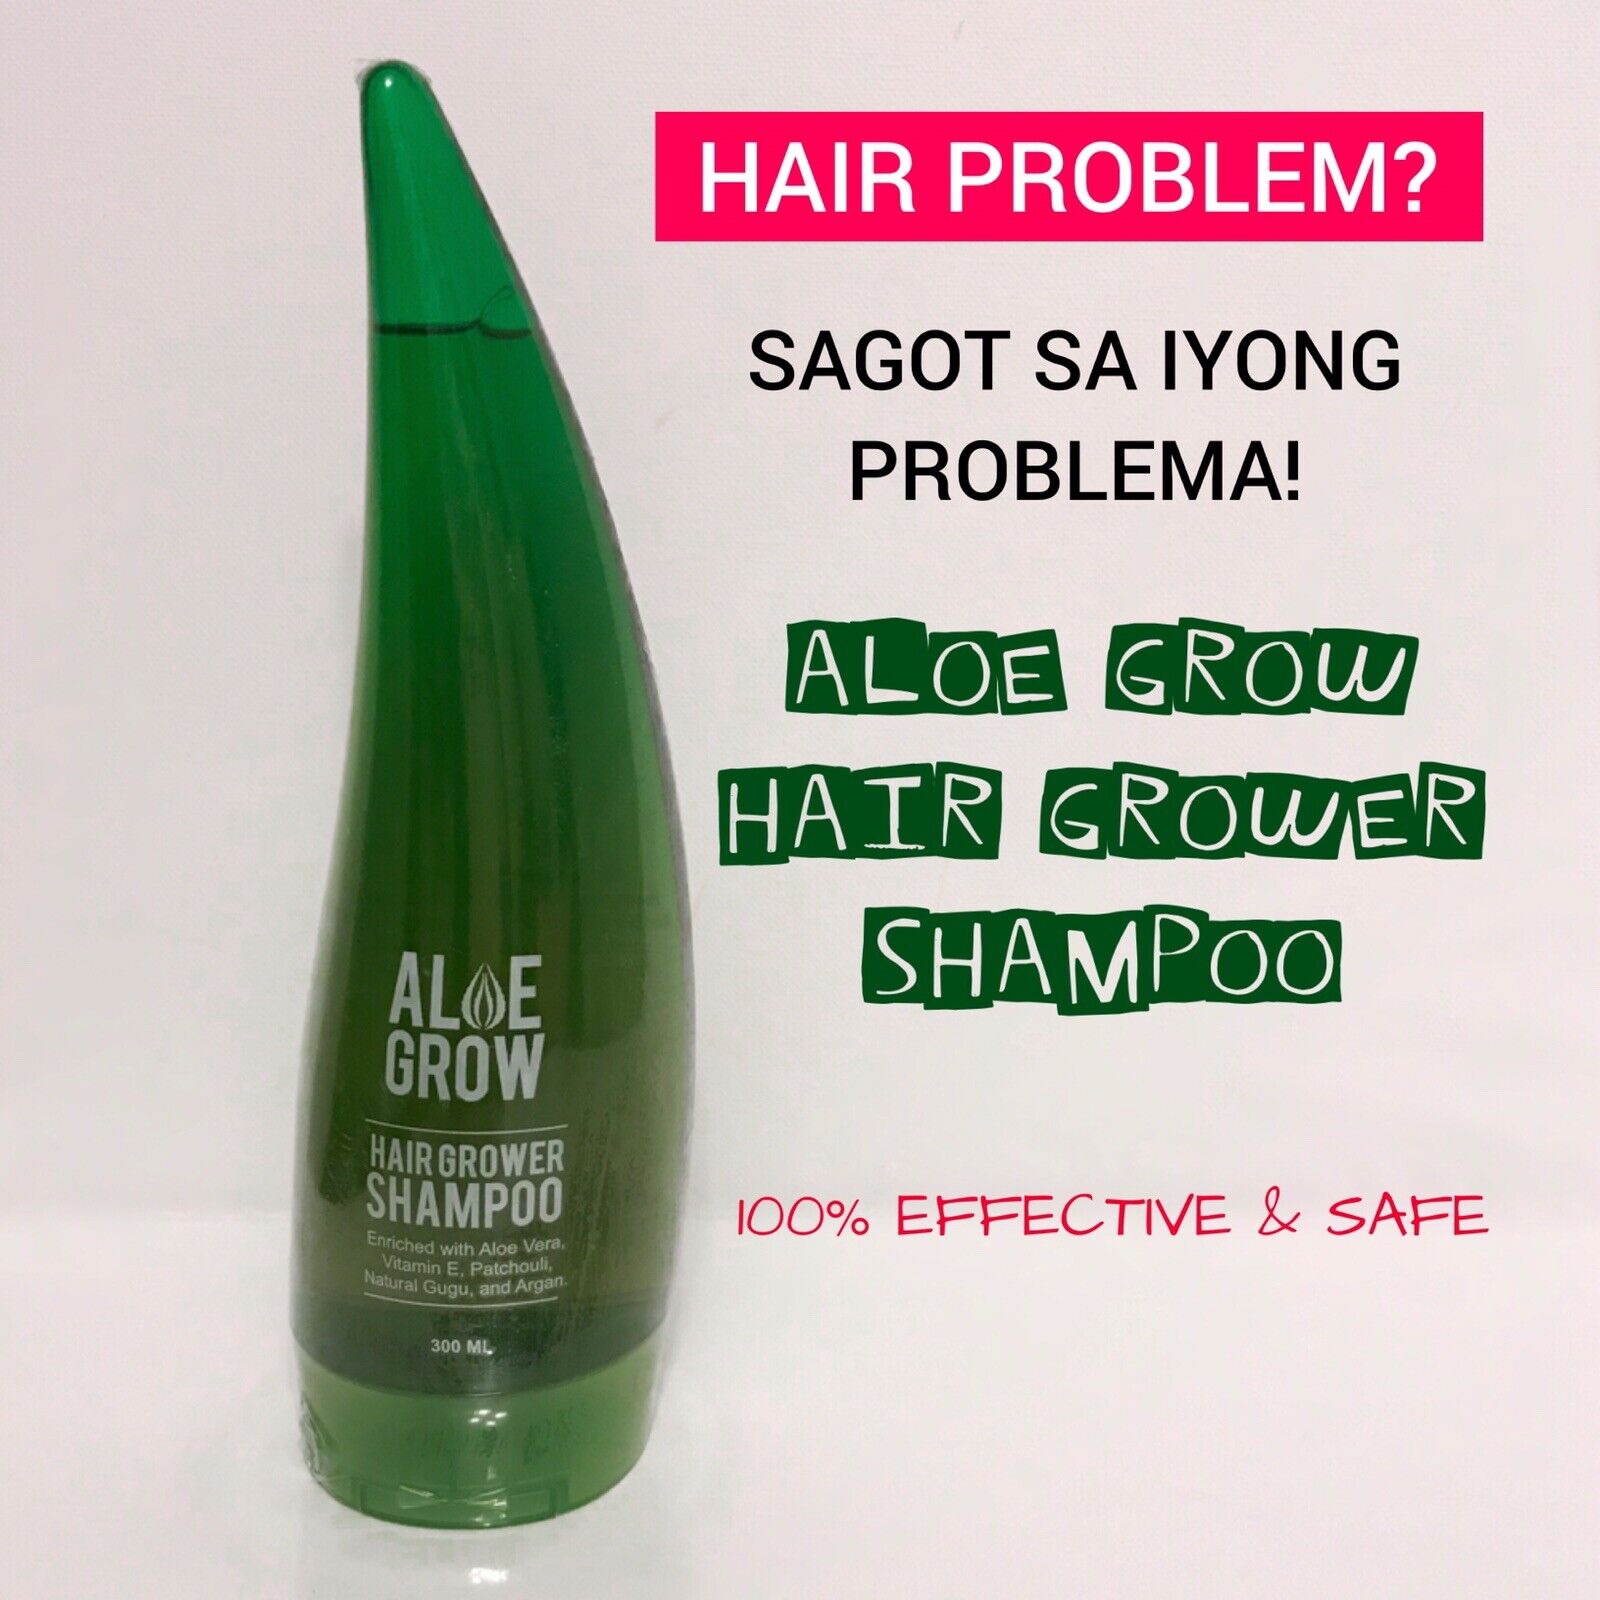 ALOE GROW Hair Grower Shampoo 300ml | eBay